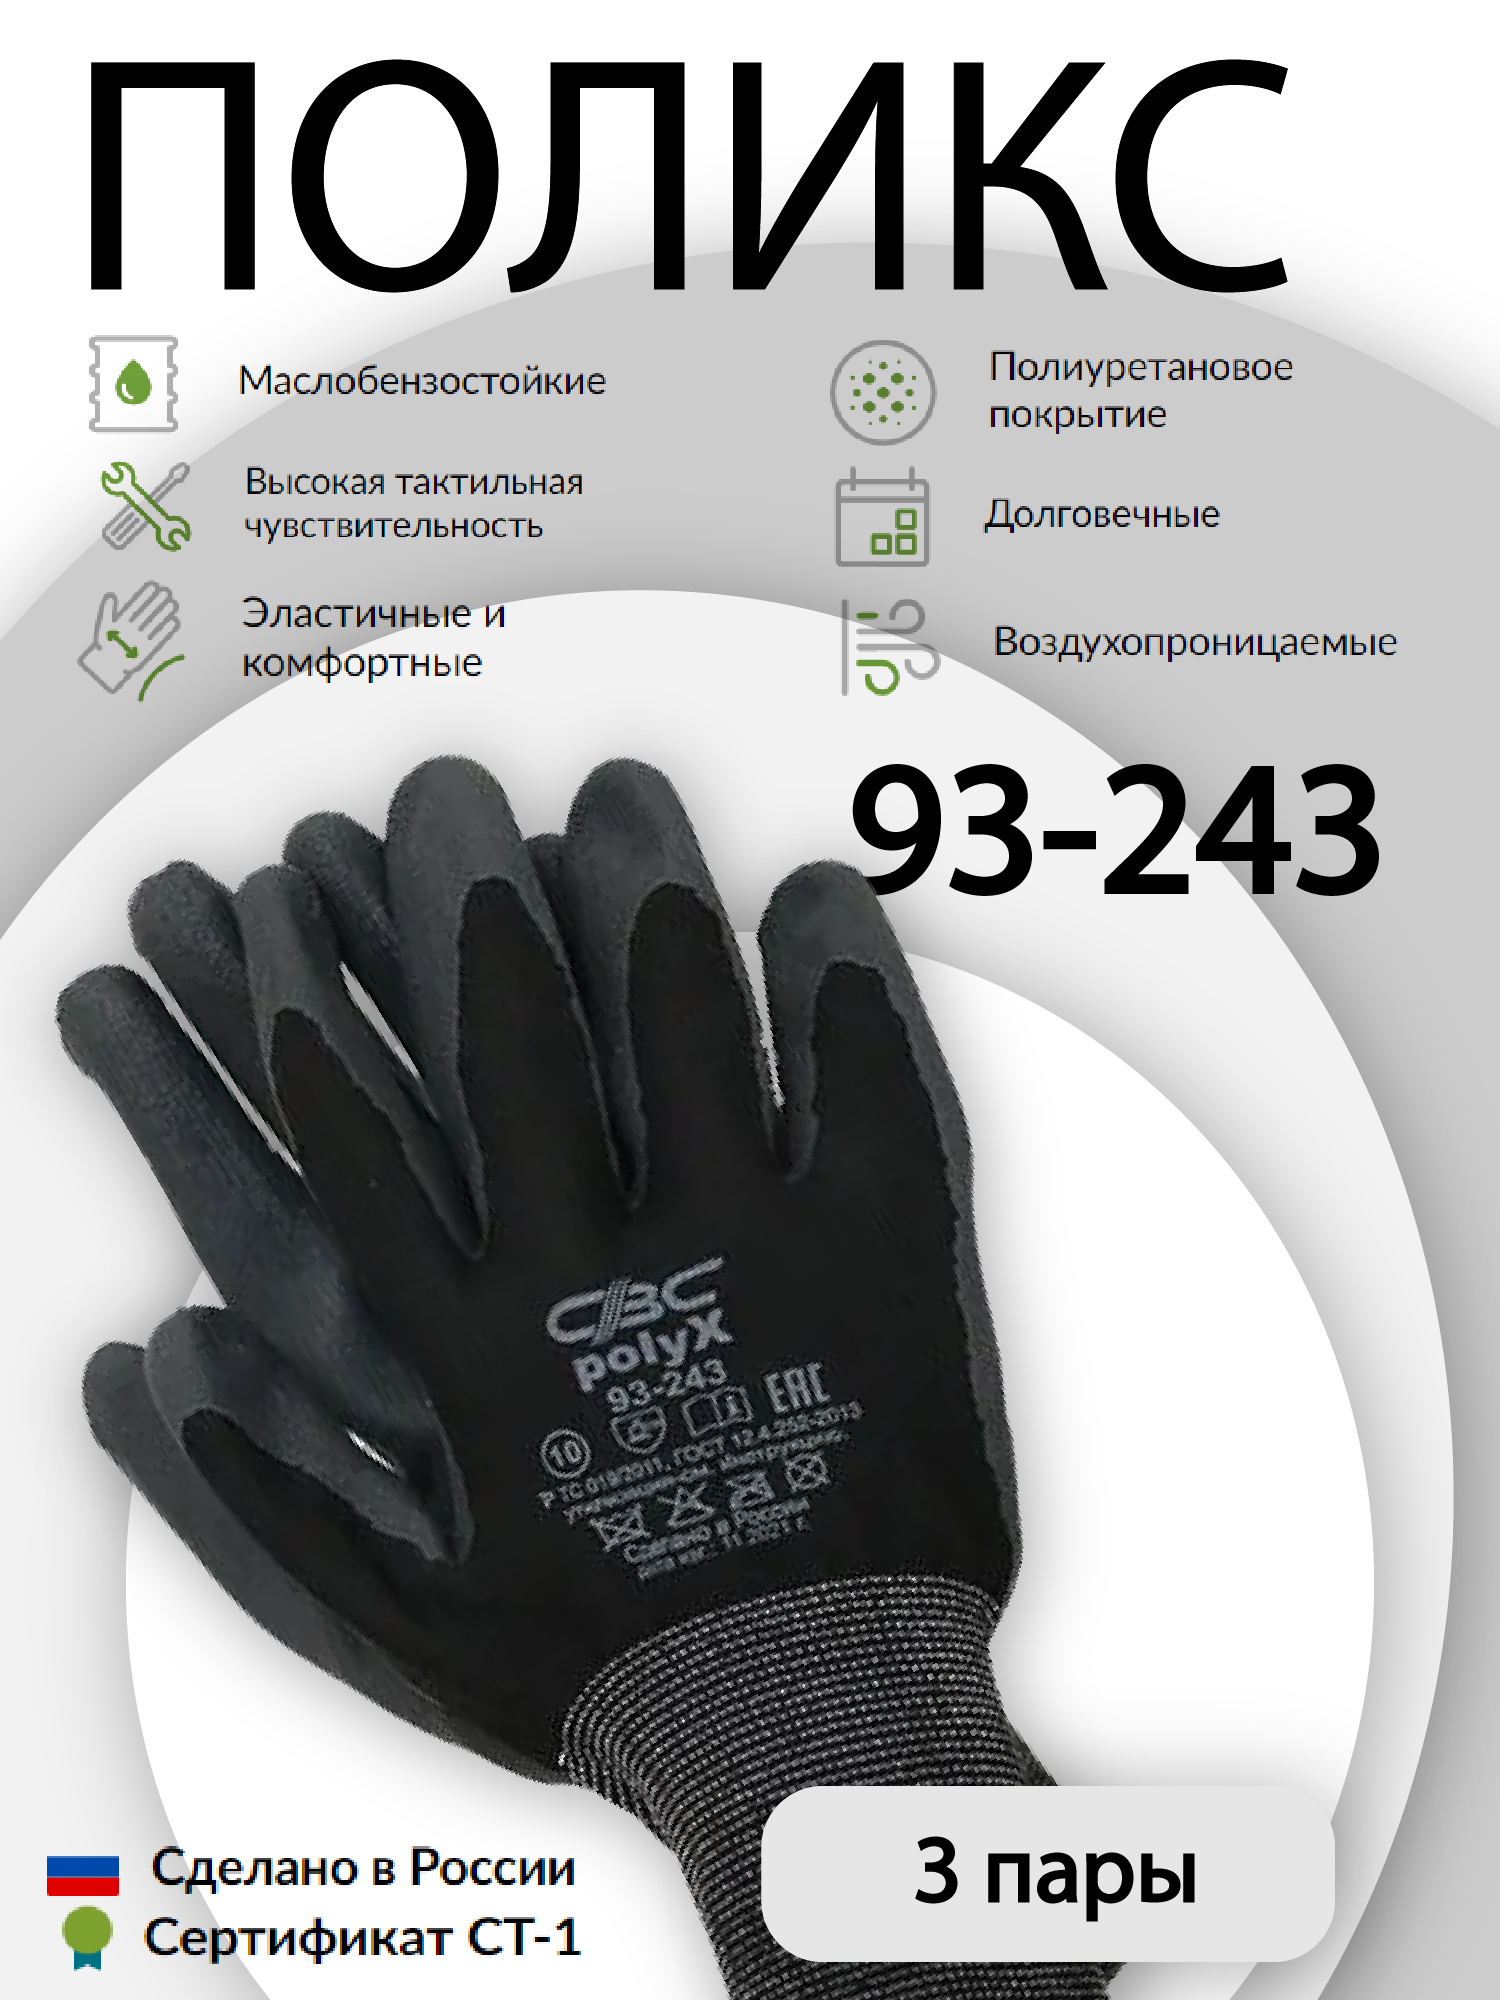 Перчатки защитные СВС ПОЛИКС 93-243 эластичные, с полиуретановым покрытием 3 пары перчатки защитные свс поликс 93 243 эластичные с полиуретановым покрытием